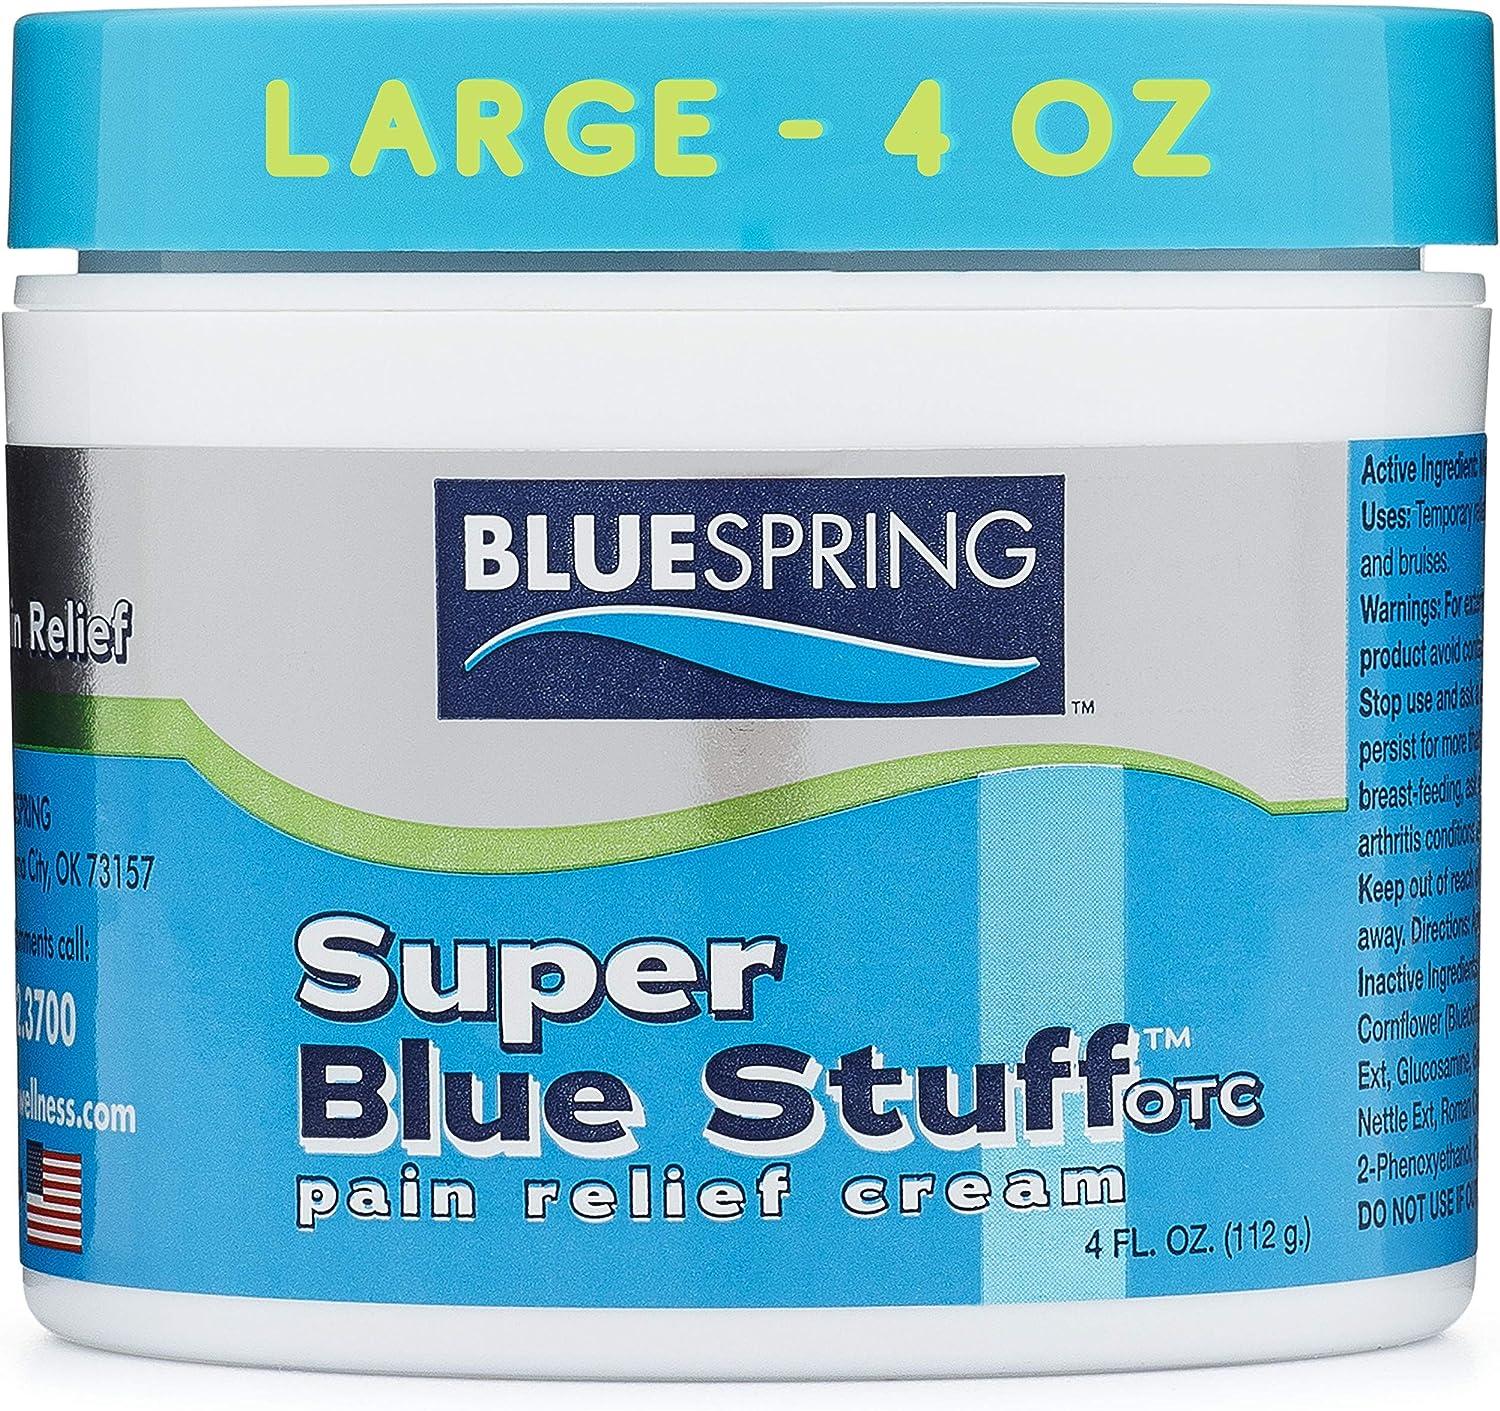 Blue-Emu Original Super Strength Pain Relieving Cream - 4 oz jar